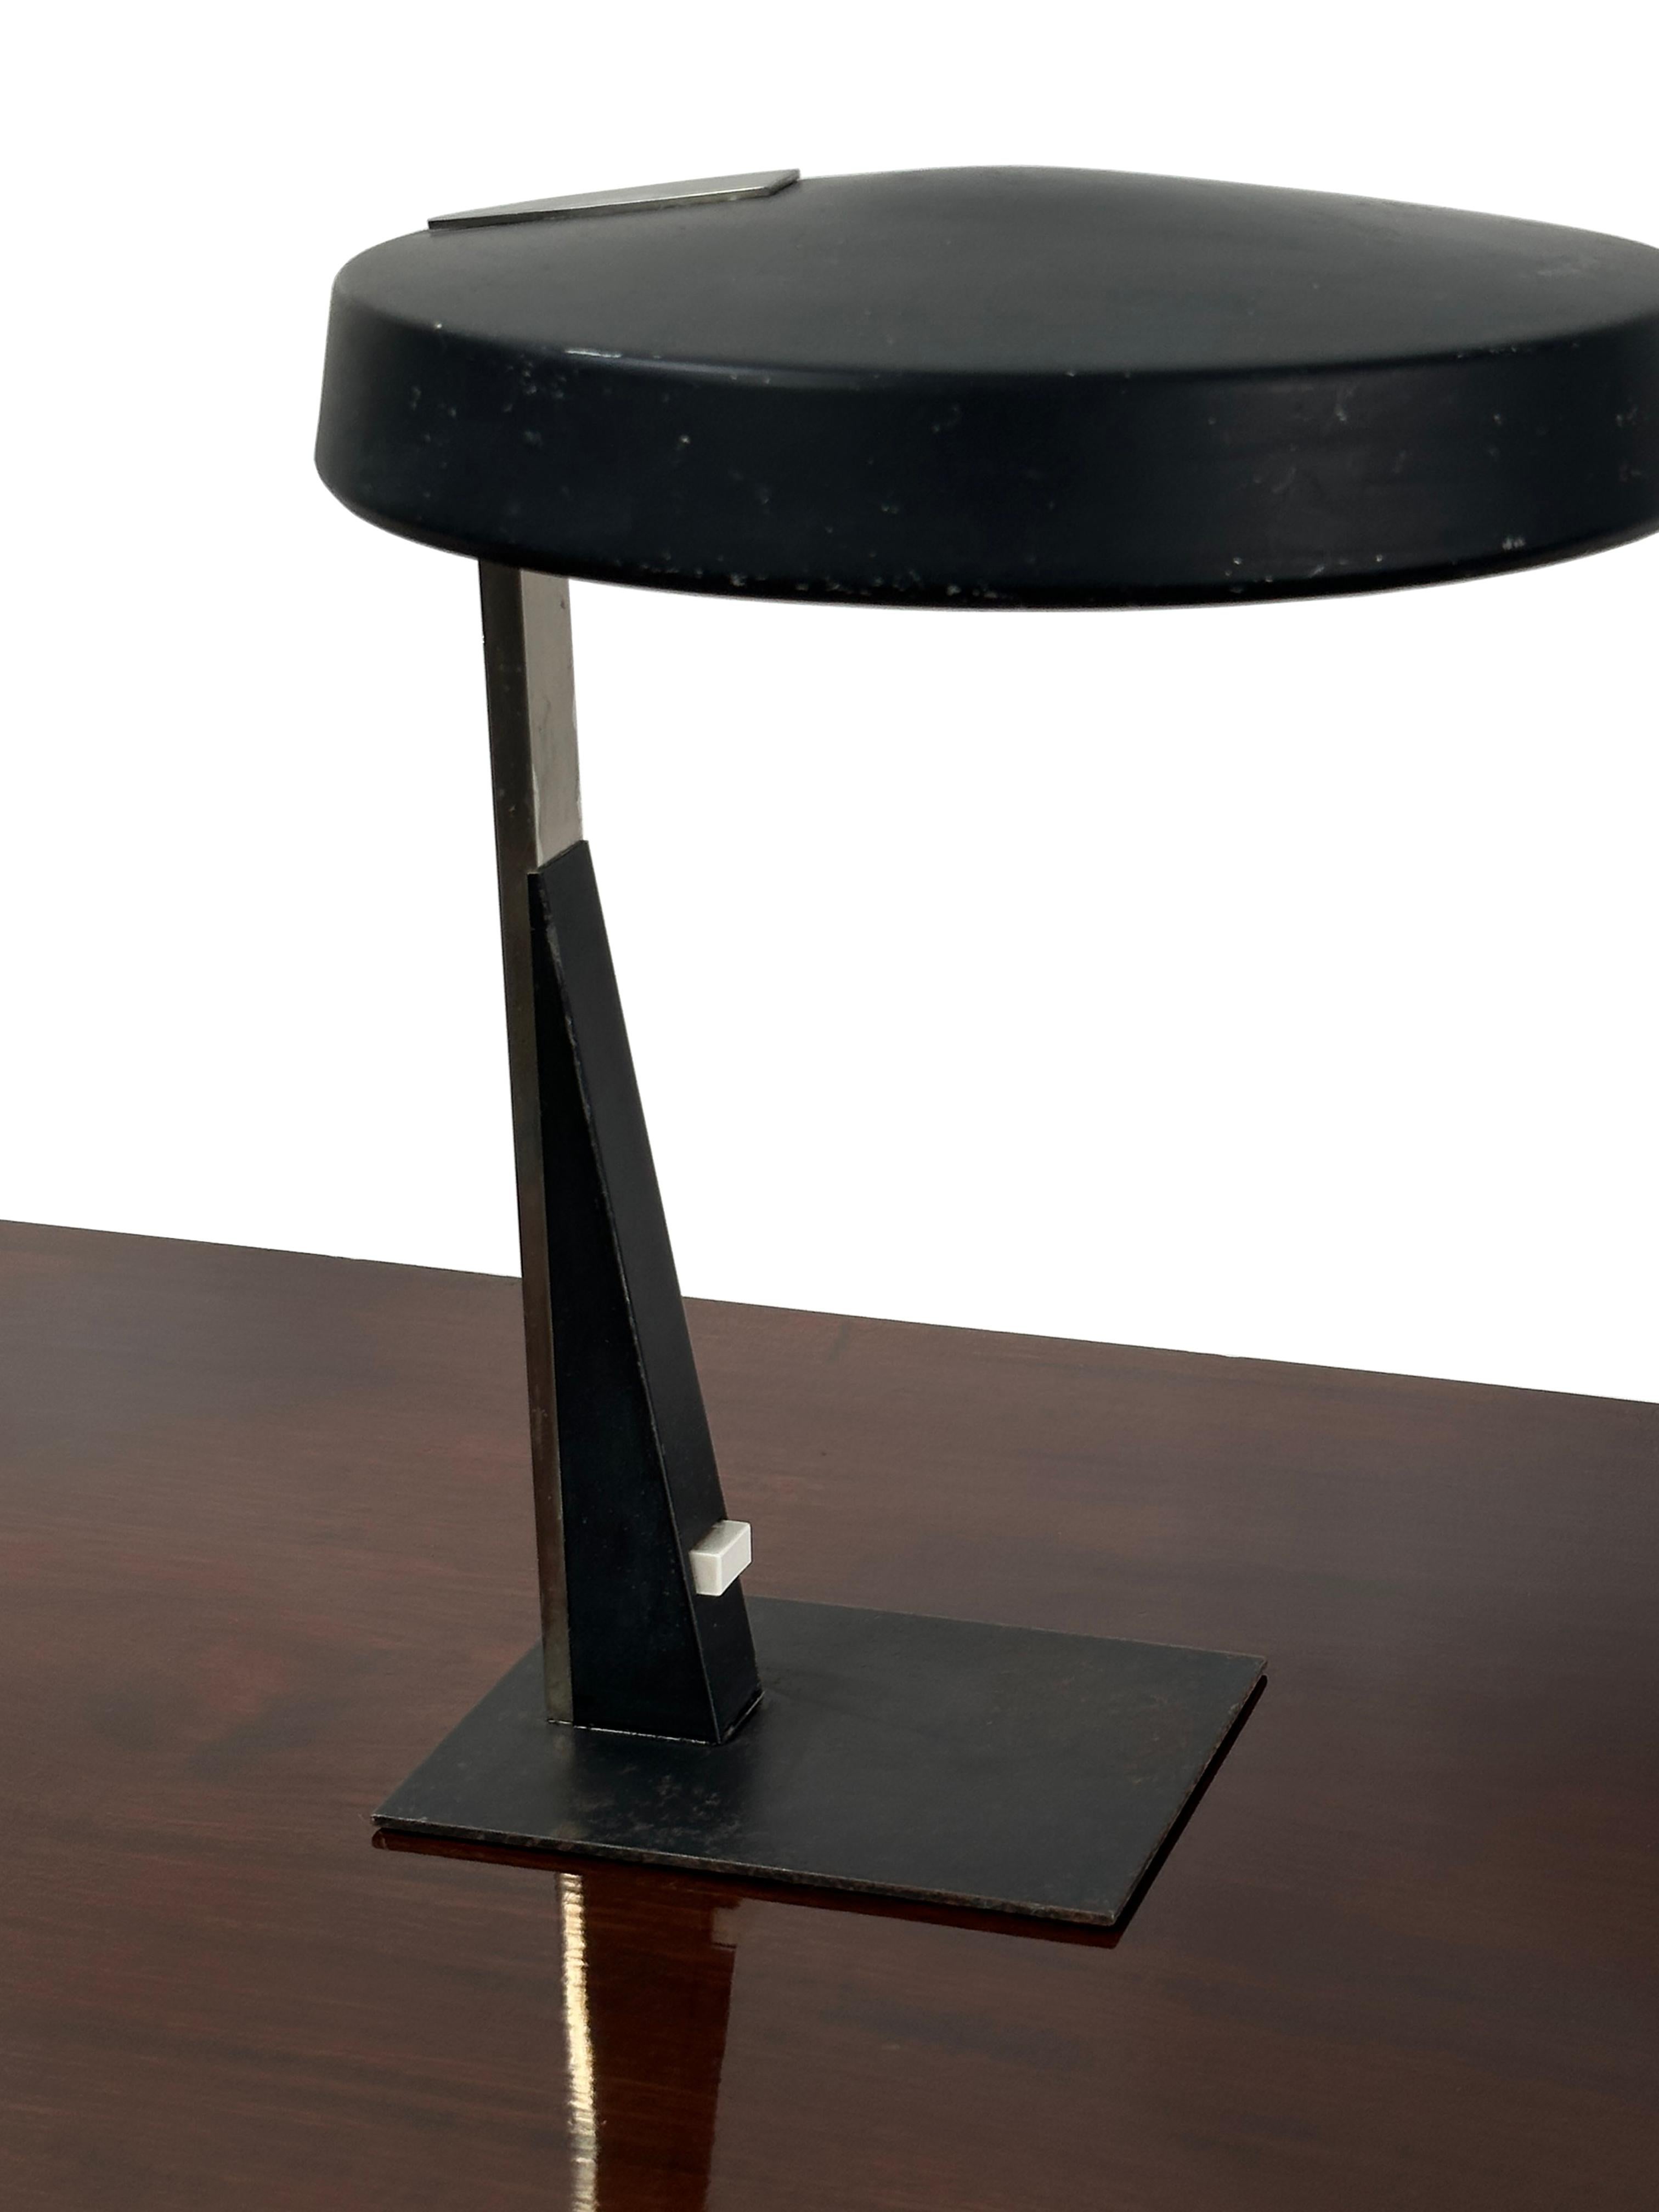 - Eine stilvolle schwarze verstellbare Schreibtischlampe des Designers Louis Kalff für Philips, Niederlande, um 1950.
- Original-Schalterplatte und verstellbare Lichtposition über den Schirm, neu verkabelt mit schwarzem Kabelgeflecht und